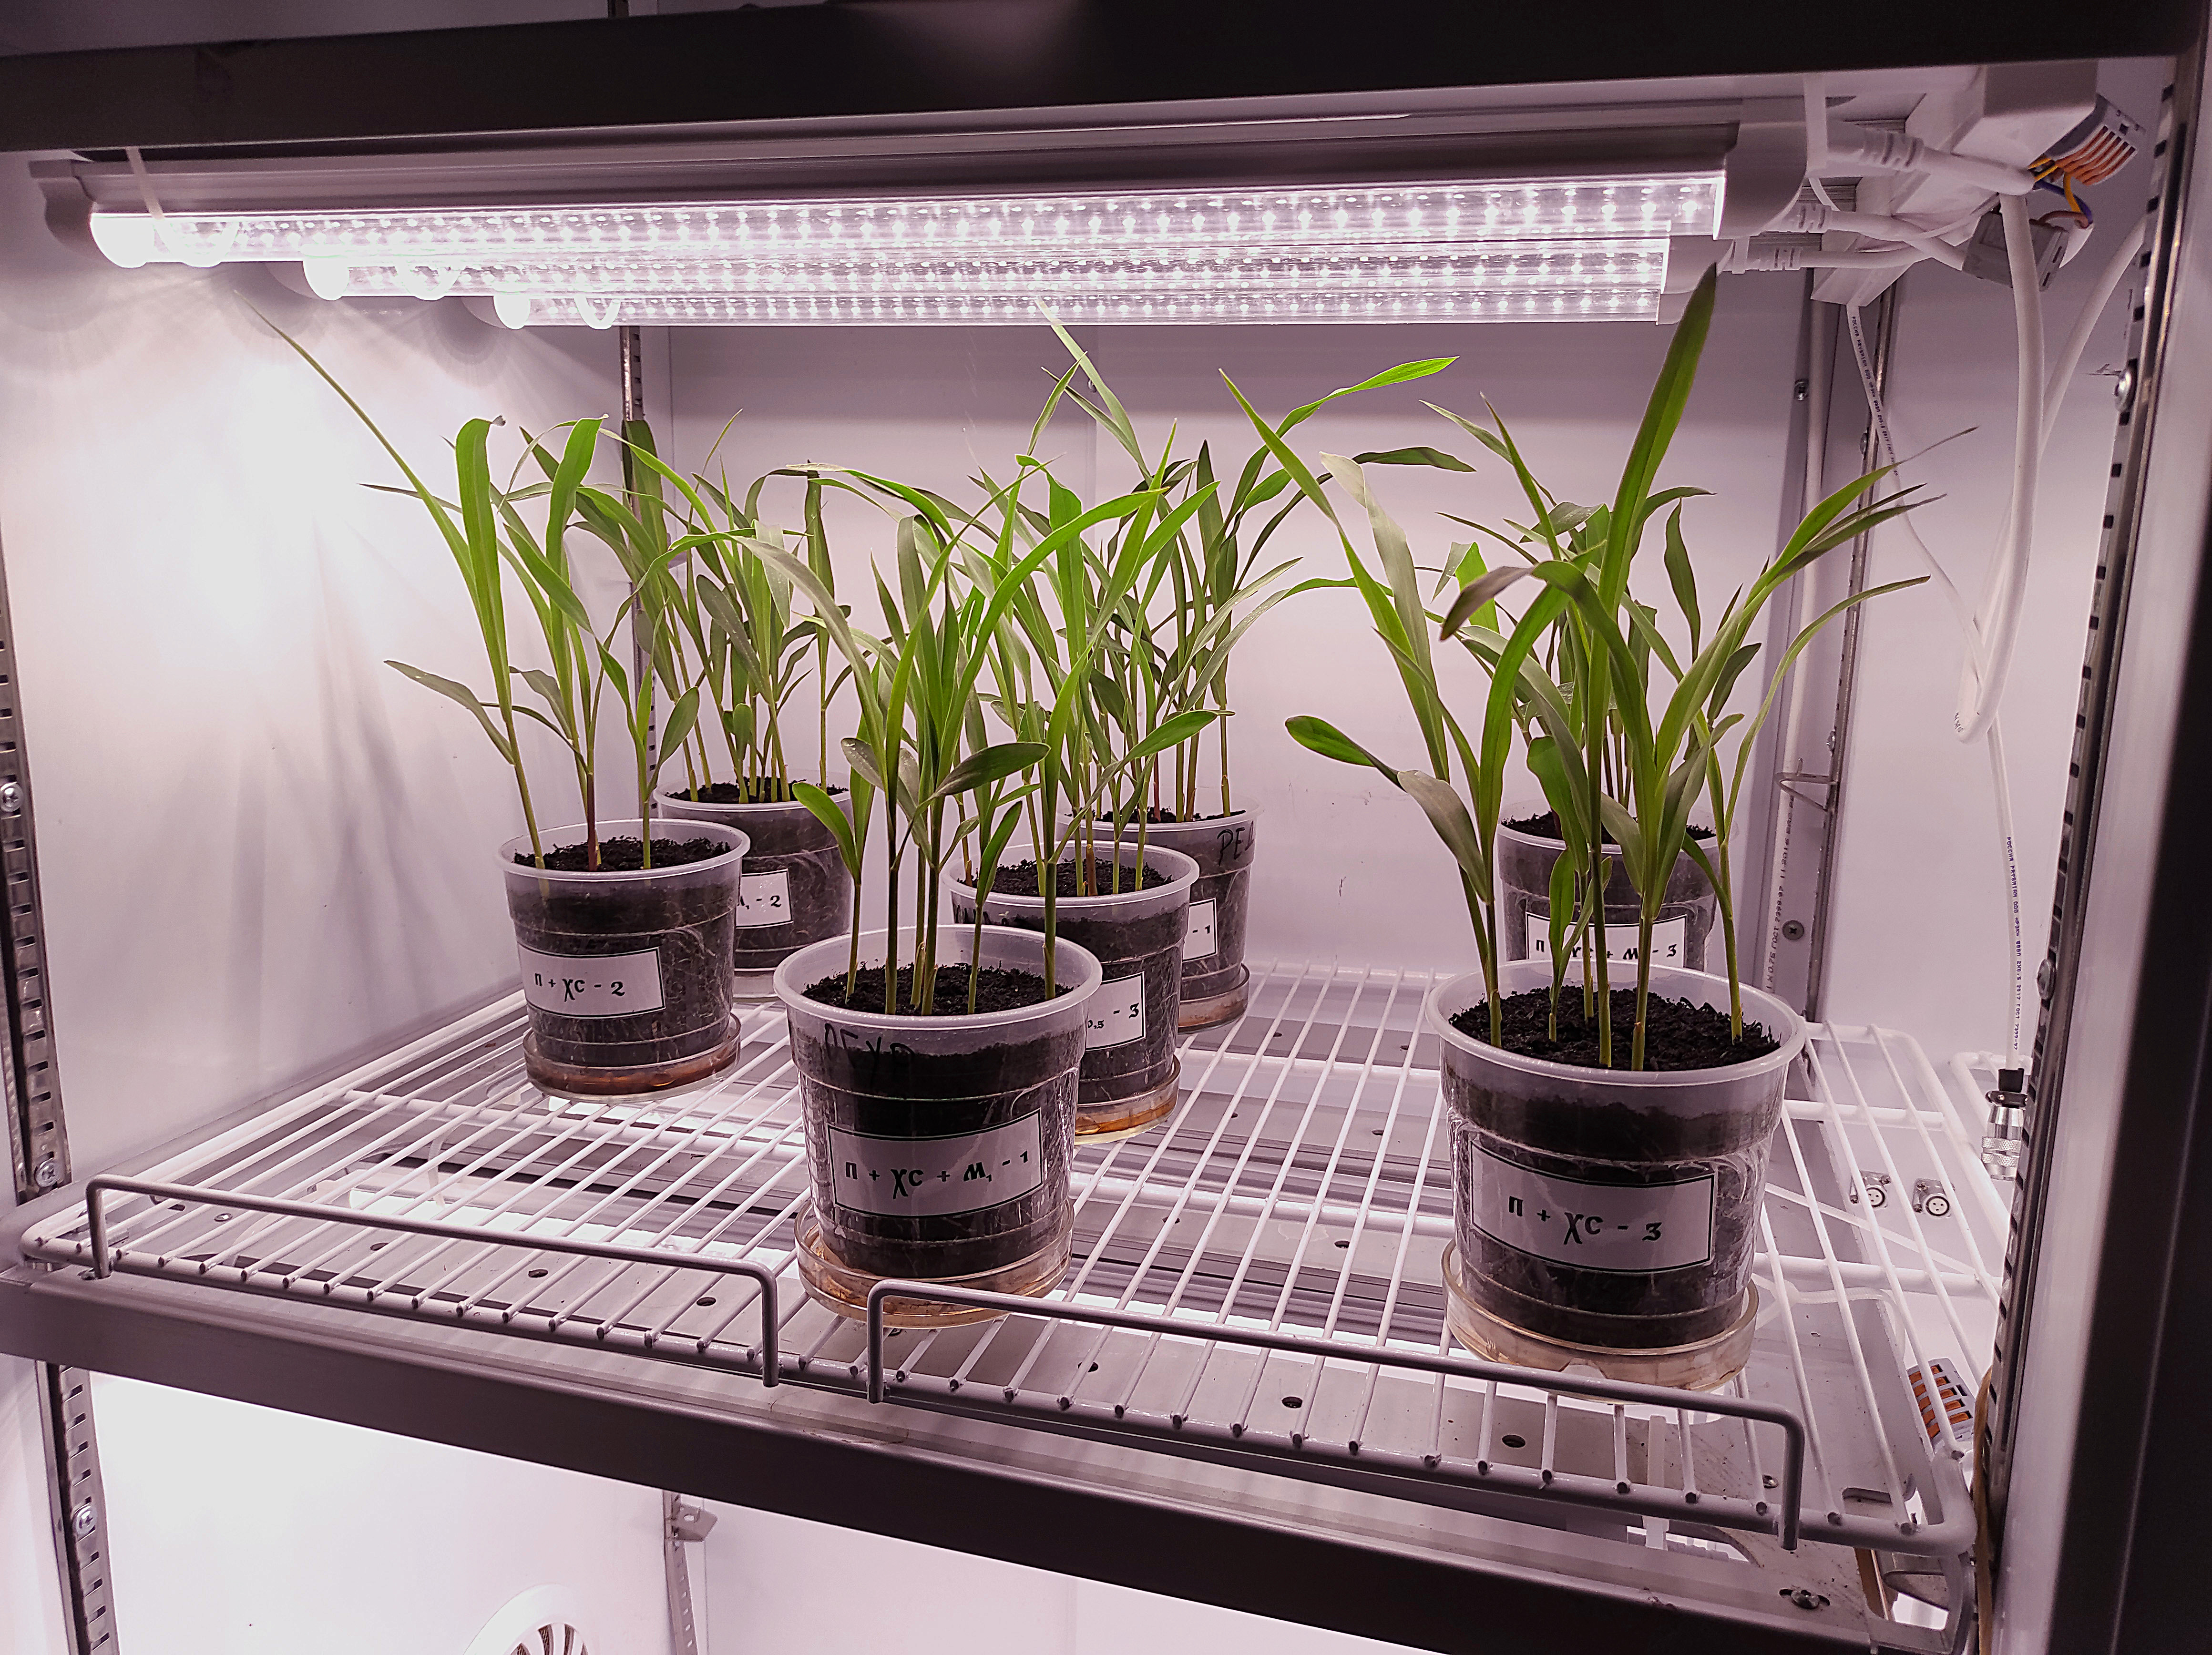 В соответствие с гос. заданием в лаборатории испытаний элементов агротехнологий, агрохимикатов и регуляторов роста проводится изучение влияния мелатонина на устойчивость кукурузы к низкотемпературному стрессу. 